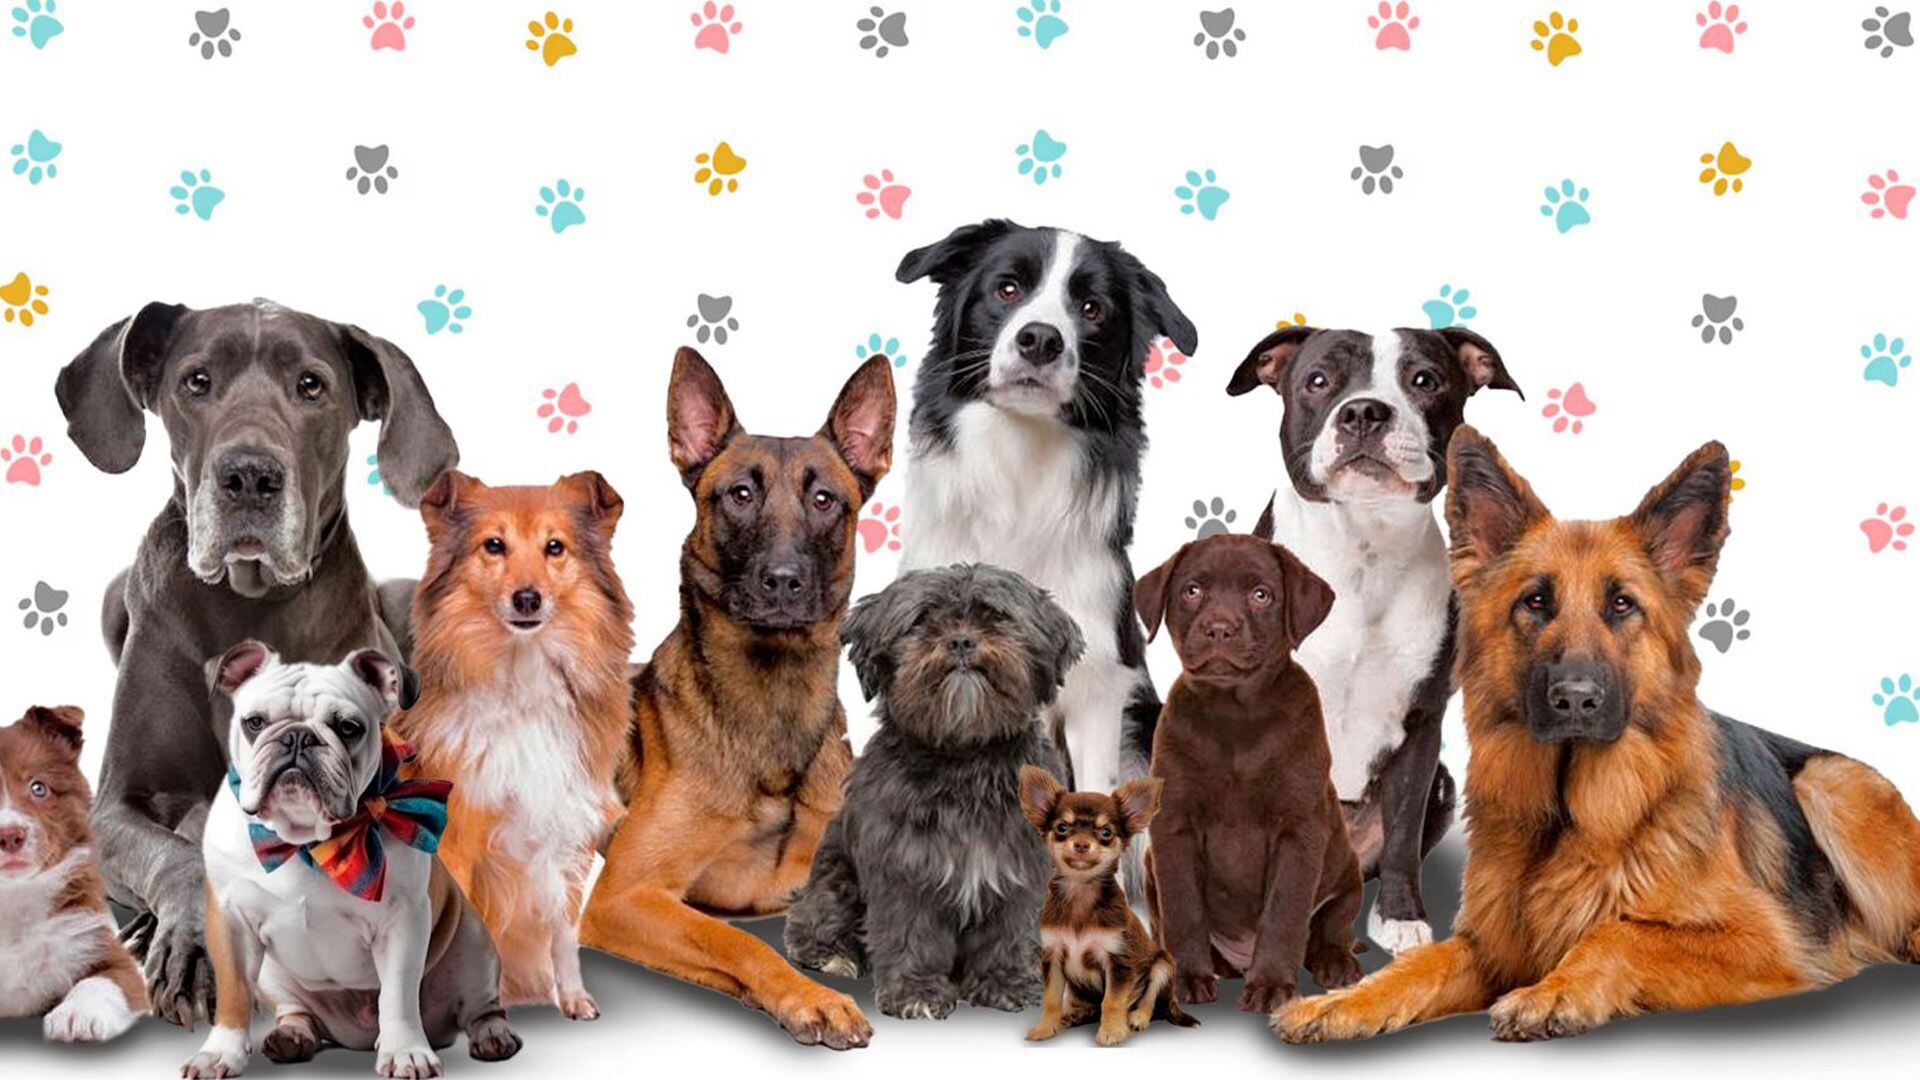 Cada raza de perro tiene necesidades específicas que se deben de tomar en cuenta antes de adoptarlo.
perros, razas de perros, animales, mascotas